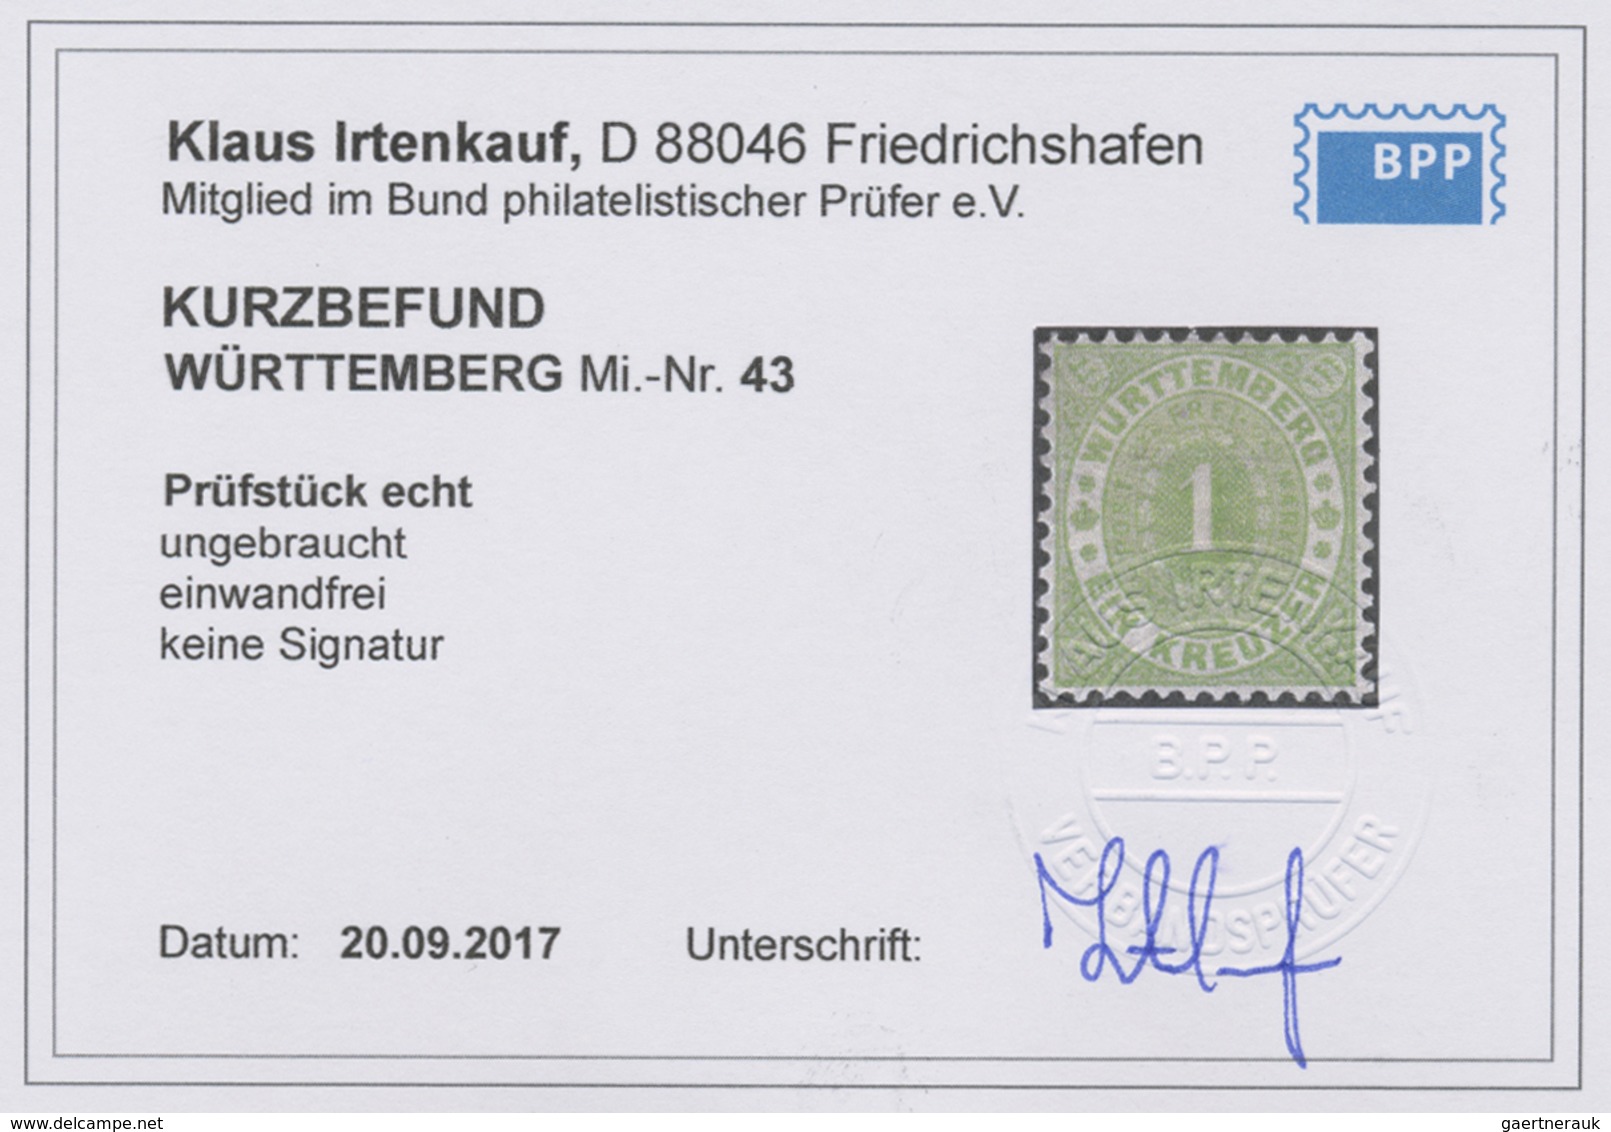 * Württemberg - Marken und Briefe: 1869, Ovalausgabe 1 Kr. bis 14 Kr. durchstochen (ausser 9 Kr.) sowi